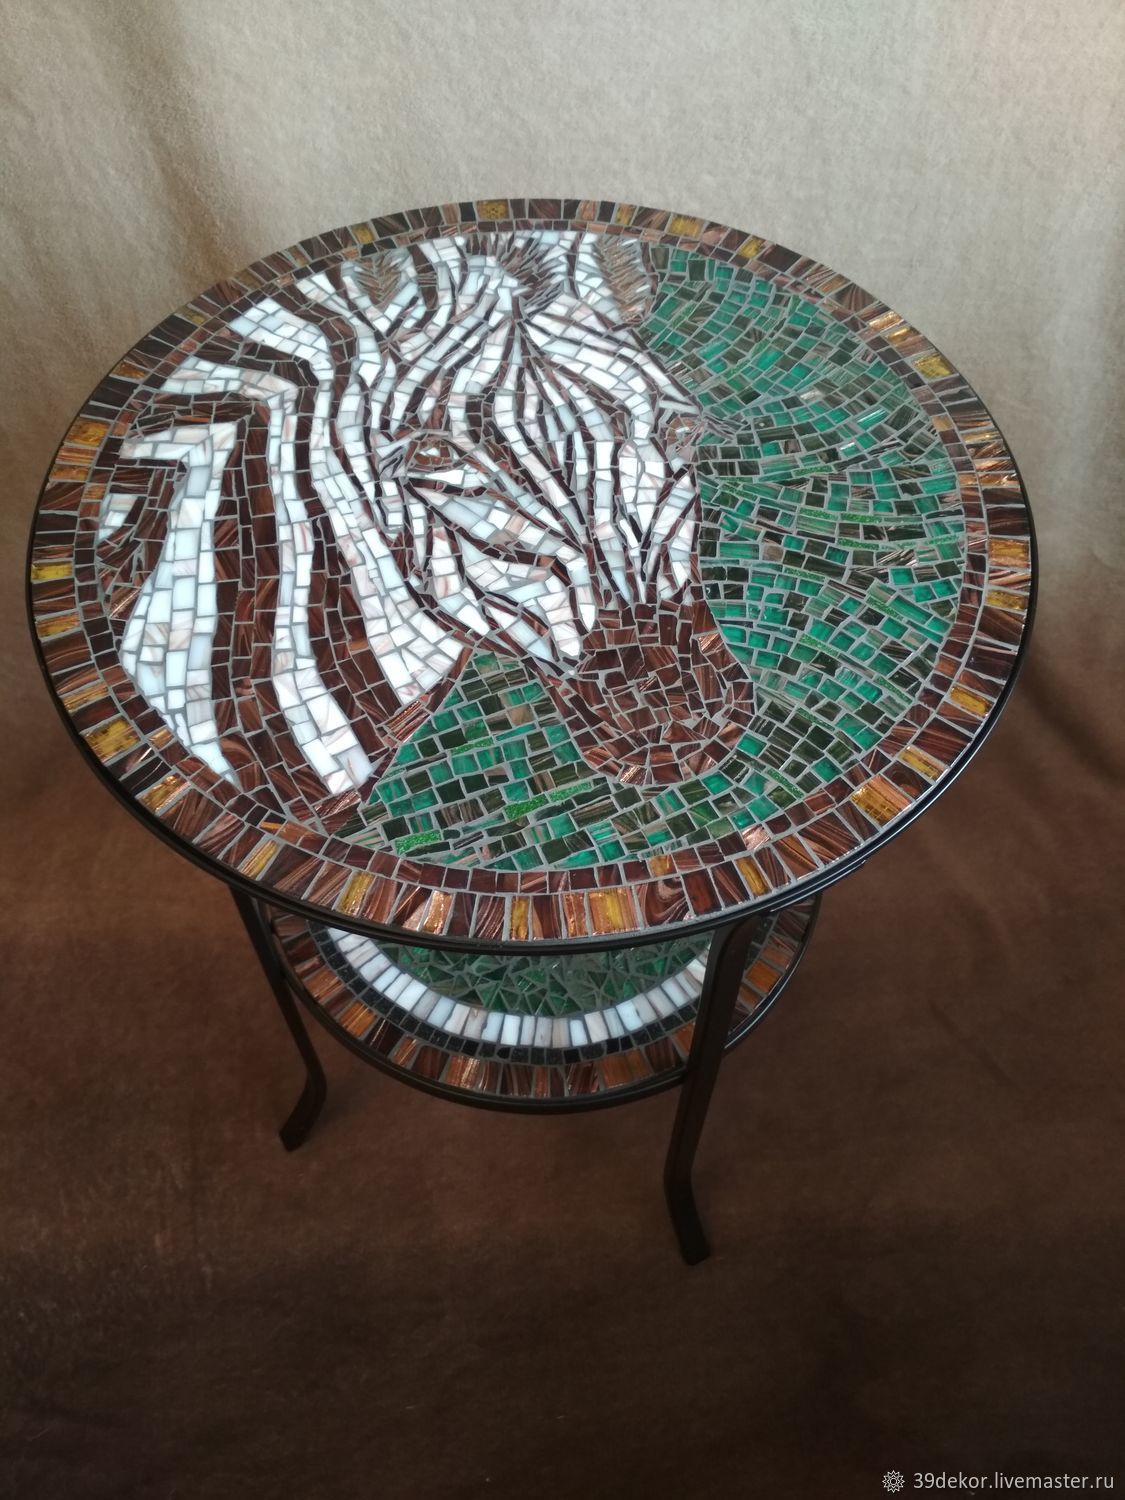 Кофейный столик со столешницей из мозаики